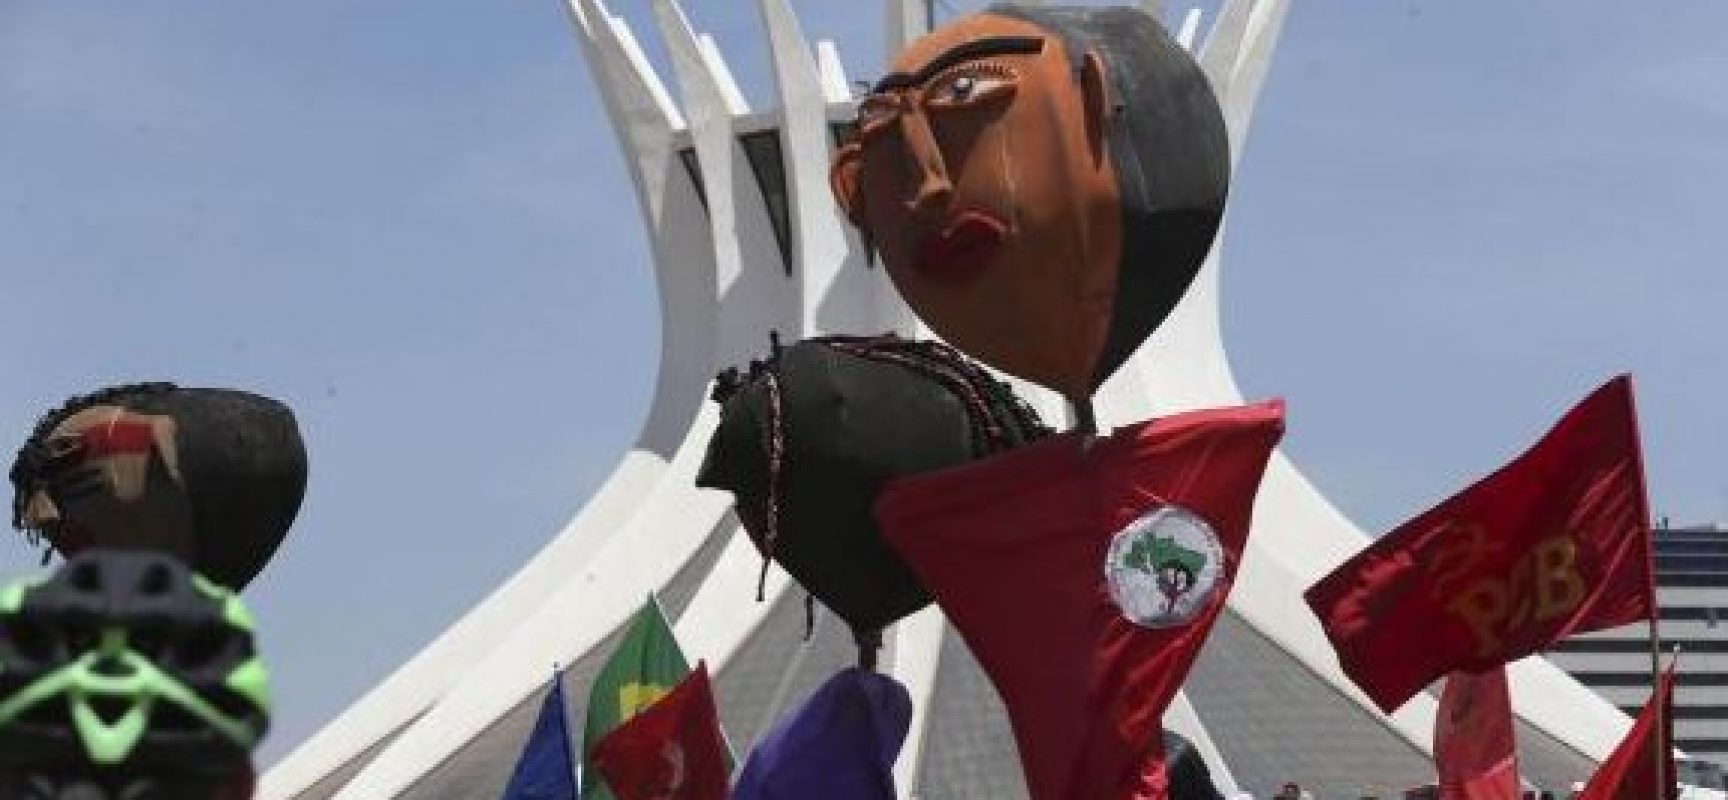 Grito dos Excluídos pede direitos e cidadania em várias capitais do Brasil